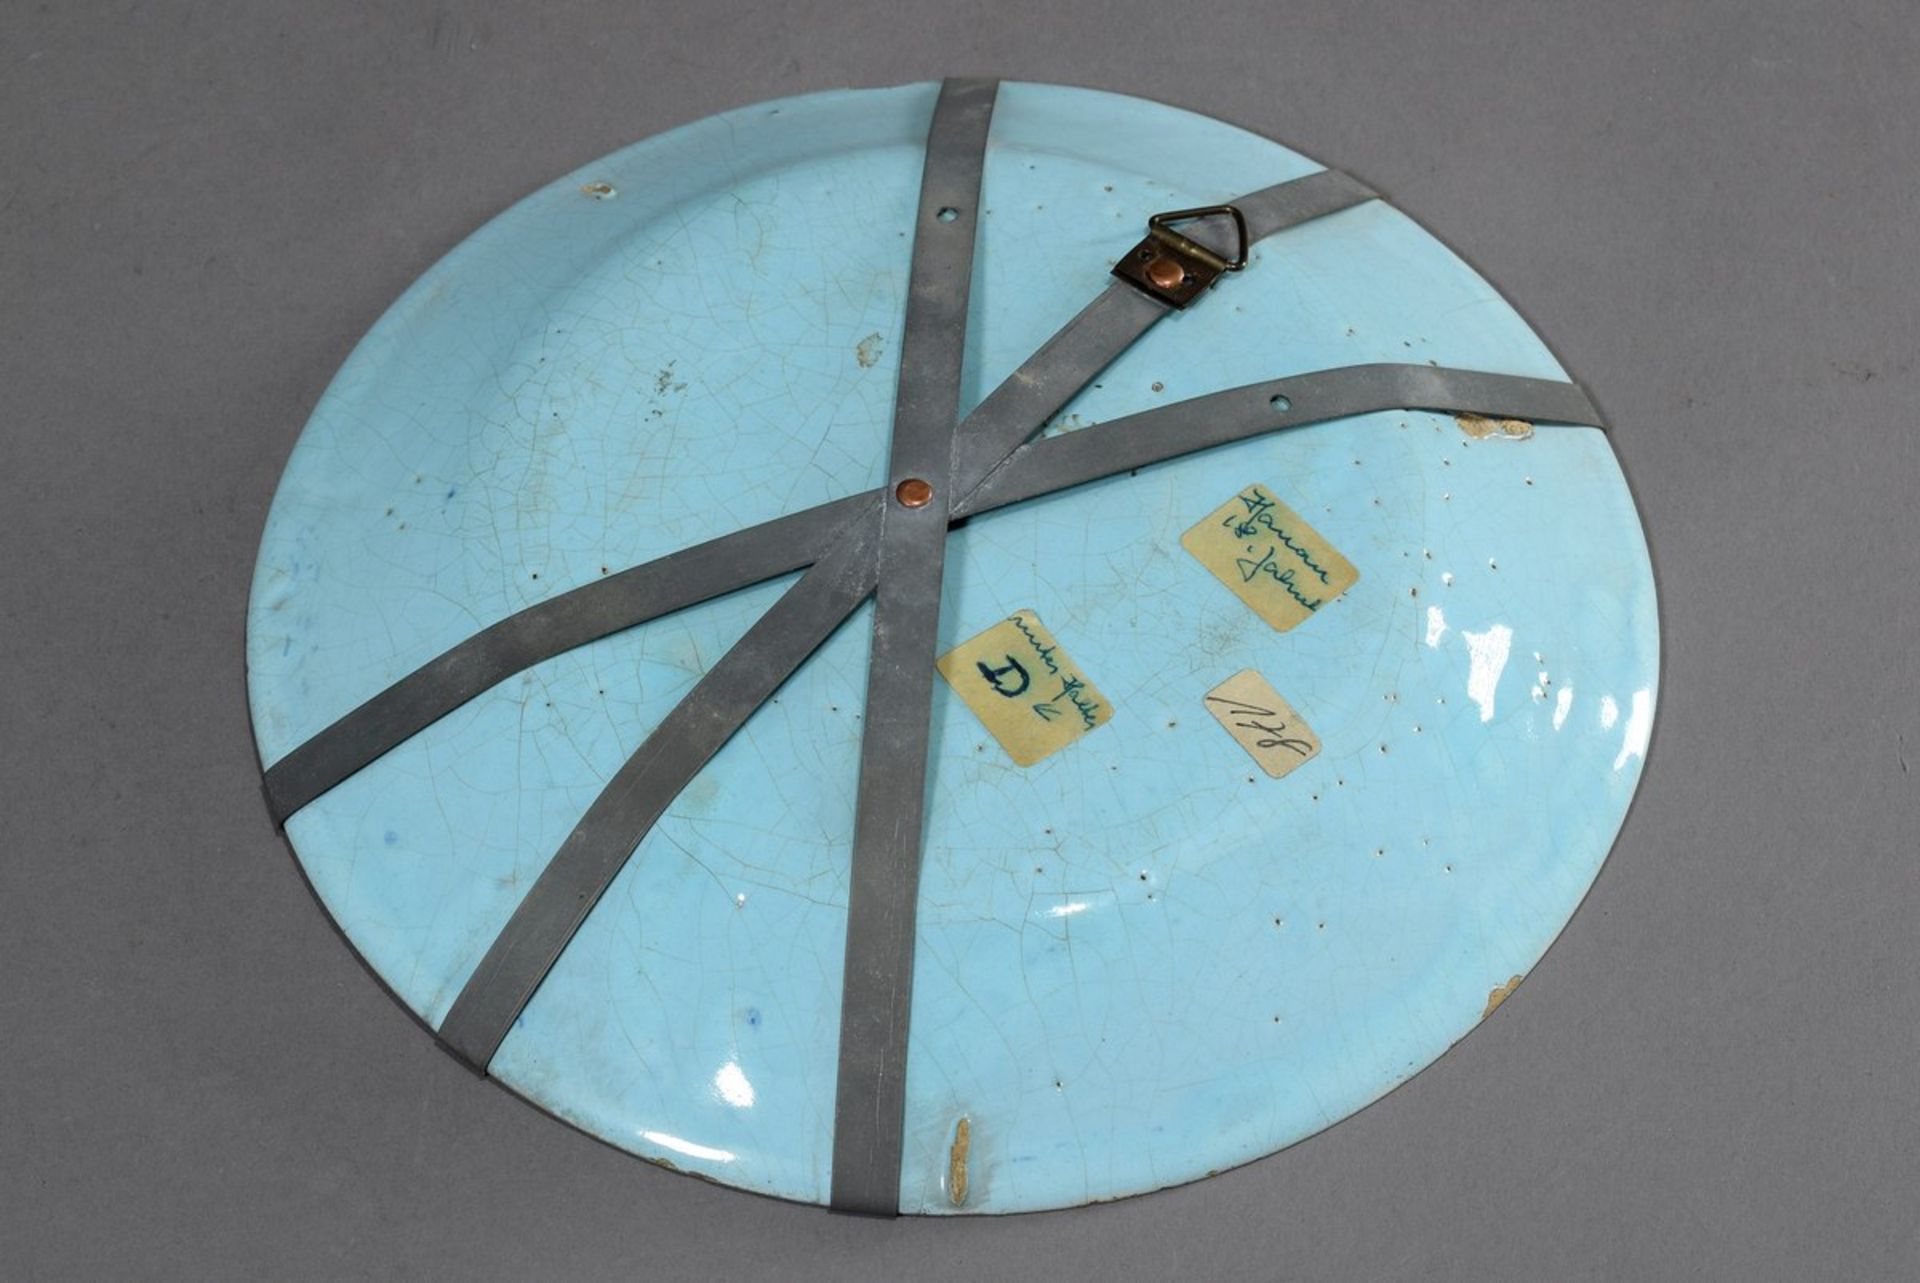 Fayence Teller mit Blaumalerei Szene "Anbetung", wohl Hanau 18.Jh., am Boden gemarkt "D", Ø 21cm, - Bild 4 aus 4